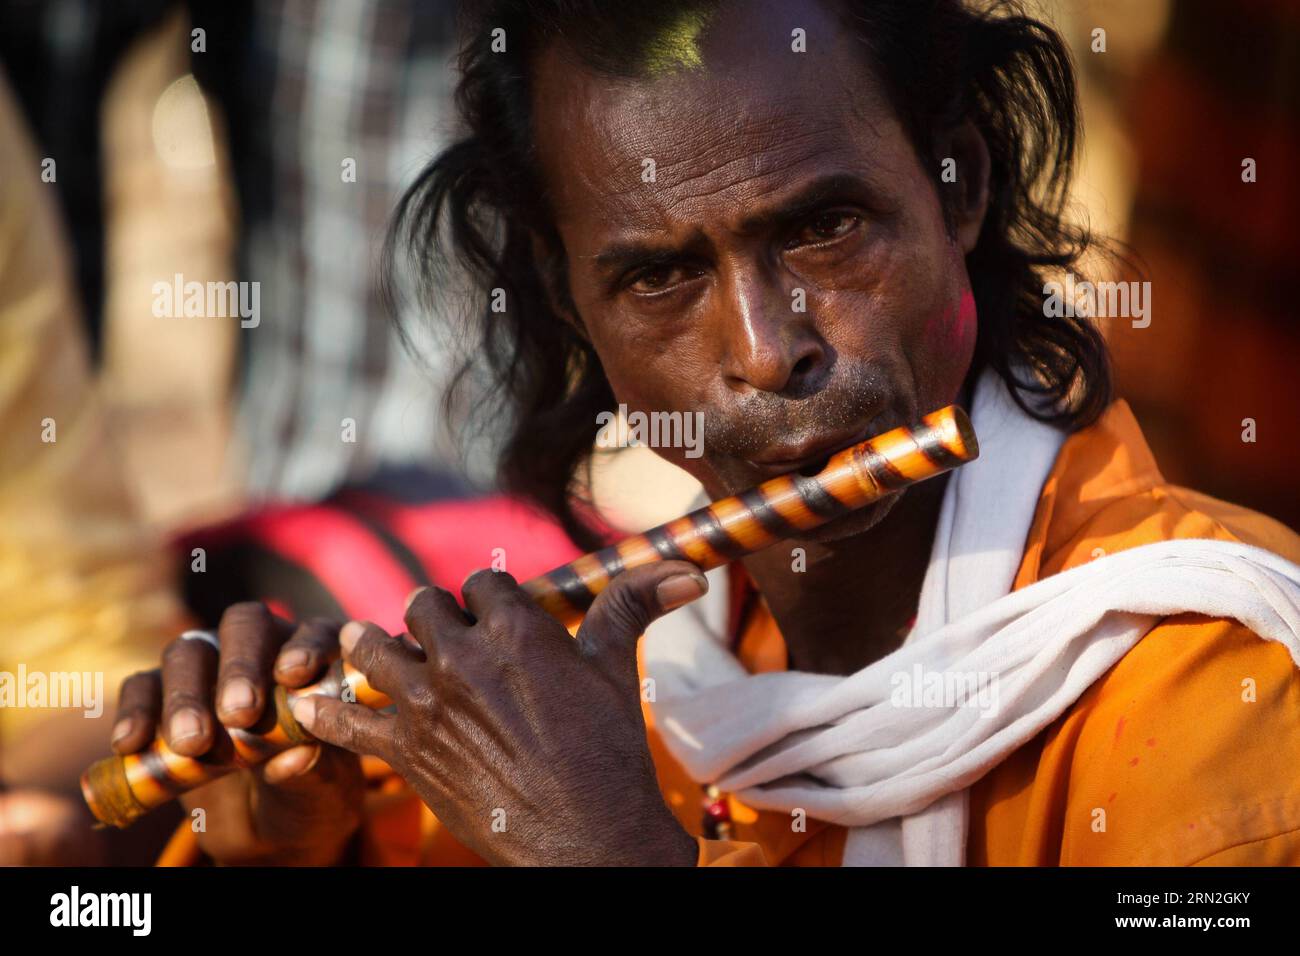 (150306) -- SANTINIKETAN, 6 marzo 2015 -- Un Baul si esibisce in un mercato in un villaggio vicino a Santiniketan, nel distretto di Birbhum del Bengala Occidentale, India, 6 marzo 2015. I Bauls sono un gruppo di minstrel mistici del Bengala che comprende lo Stato indiano del Bengala occidentale e il Bangladesh. Spesso identificati dai loro abiti distintivi e dagli strumenti musicali, i Bauls sono popolari quando cantano da soli o si esibiscono per le persone. La musica Baul ebbe una grande influenza sulla poesia di Rabindranath Tagore e sulla sua musica. Nel 2005, la tradizione Baul è stata inclusa nella lista dei capolavori della musica orale e.. Foto Stock